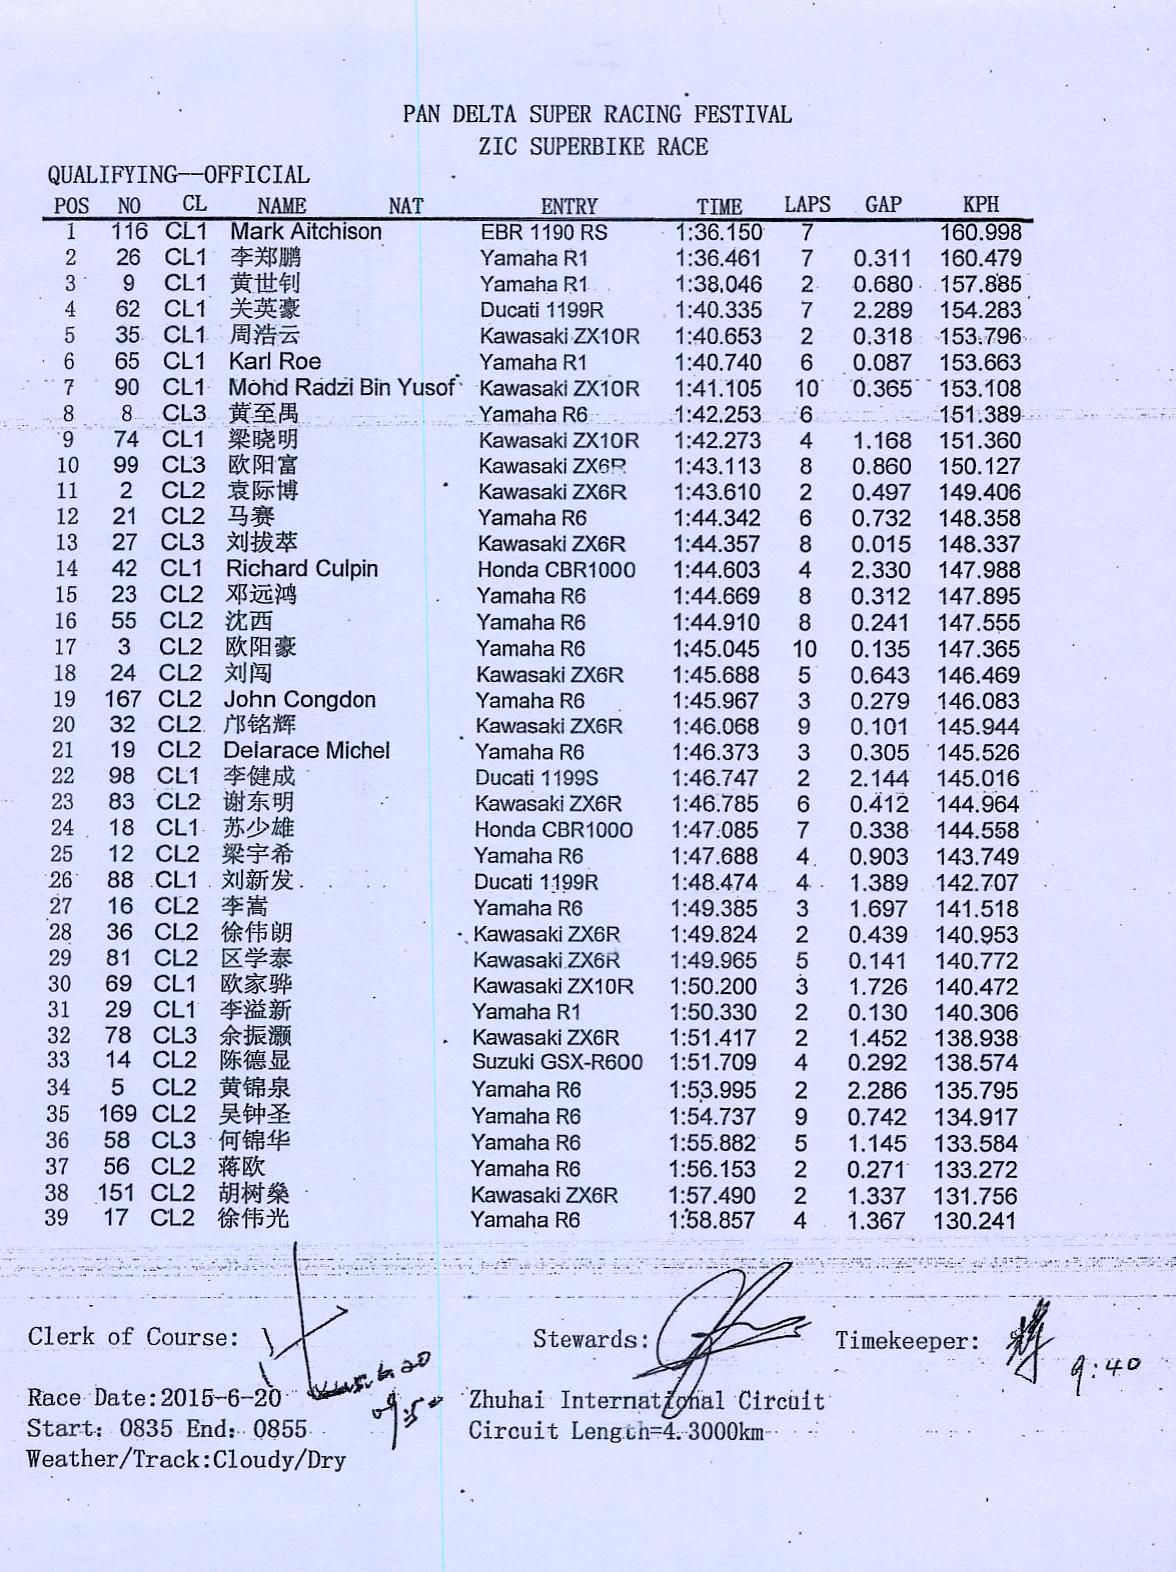 2015年泛珠夏季赛ZIC超级摩托车 排位赛成绩